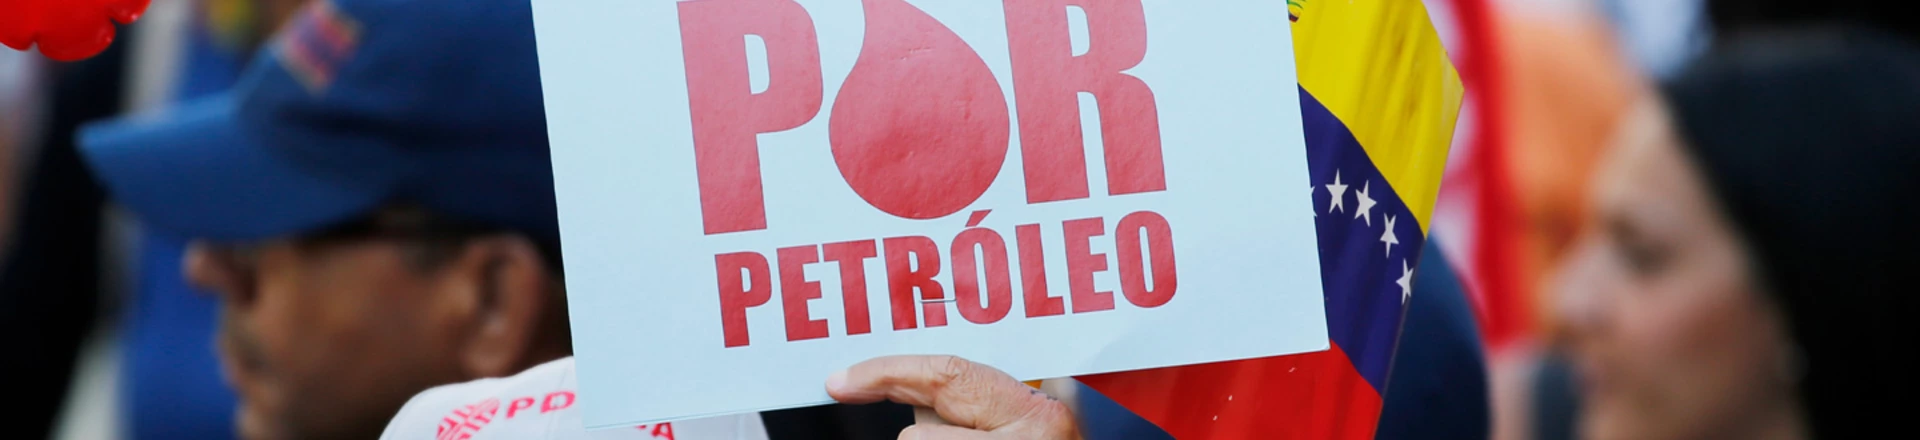 Manifestante segura uma placa onde se lê "Atacam por petróleo" durante um protesto em apoio a PDVSA em Caracas.